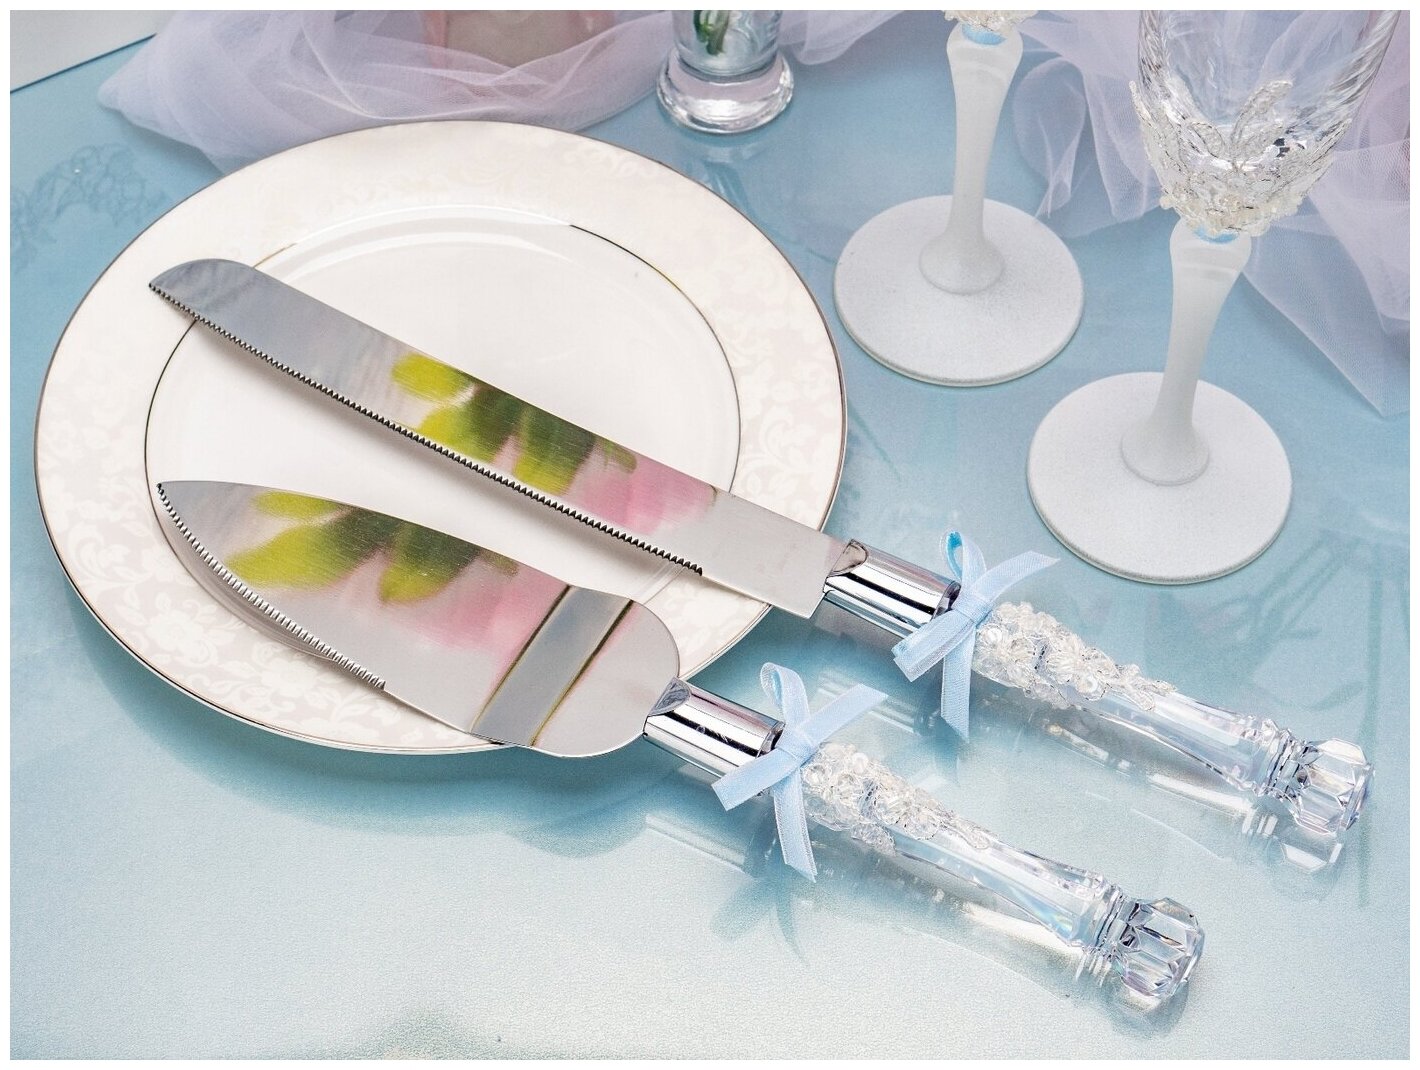 Приборы для свадебного торта молодоженов "Таэль" с прозрачными ручками, белым кружевом и атласными лентами голубого цвета (лопатка и нож)